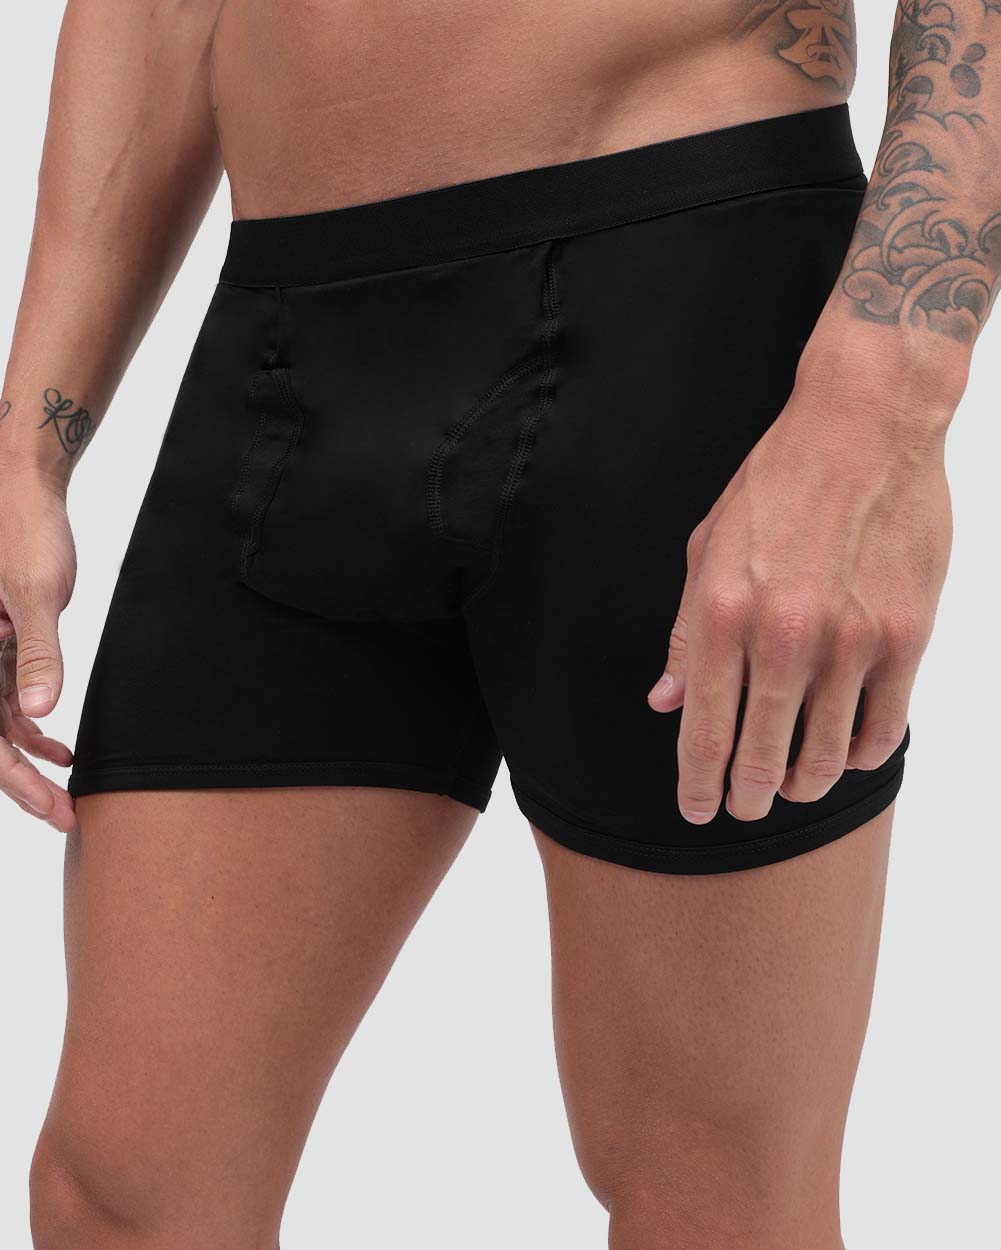 Pocket Underwear for Men with Secret Hidden Front Stash Pocket